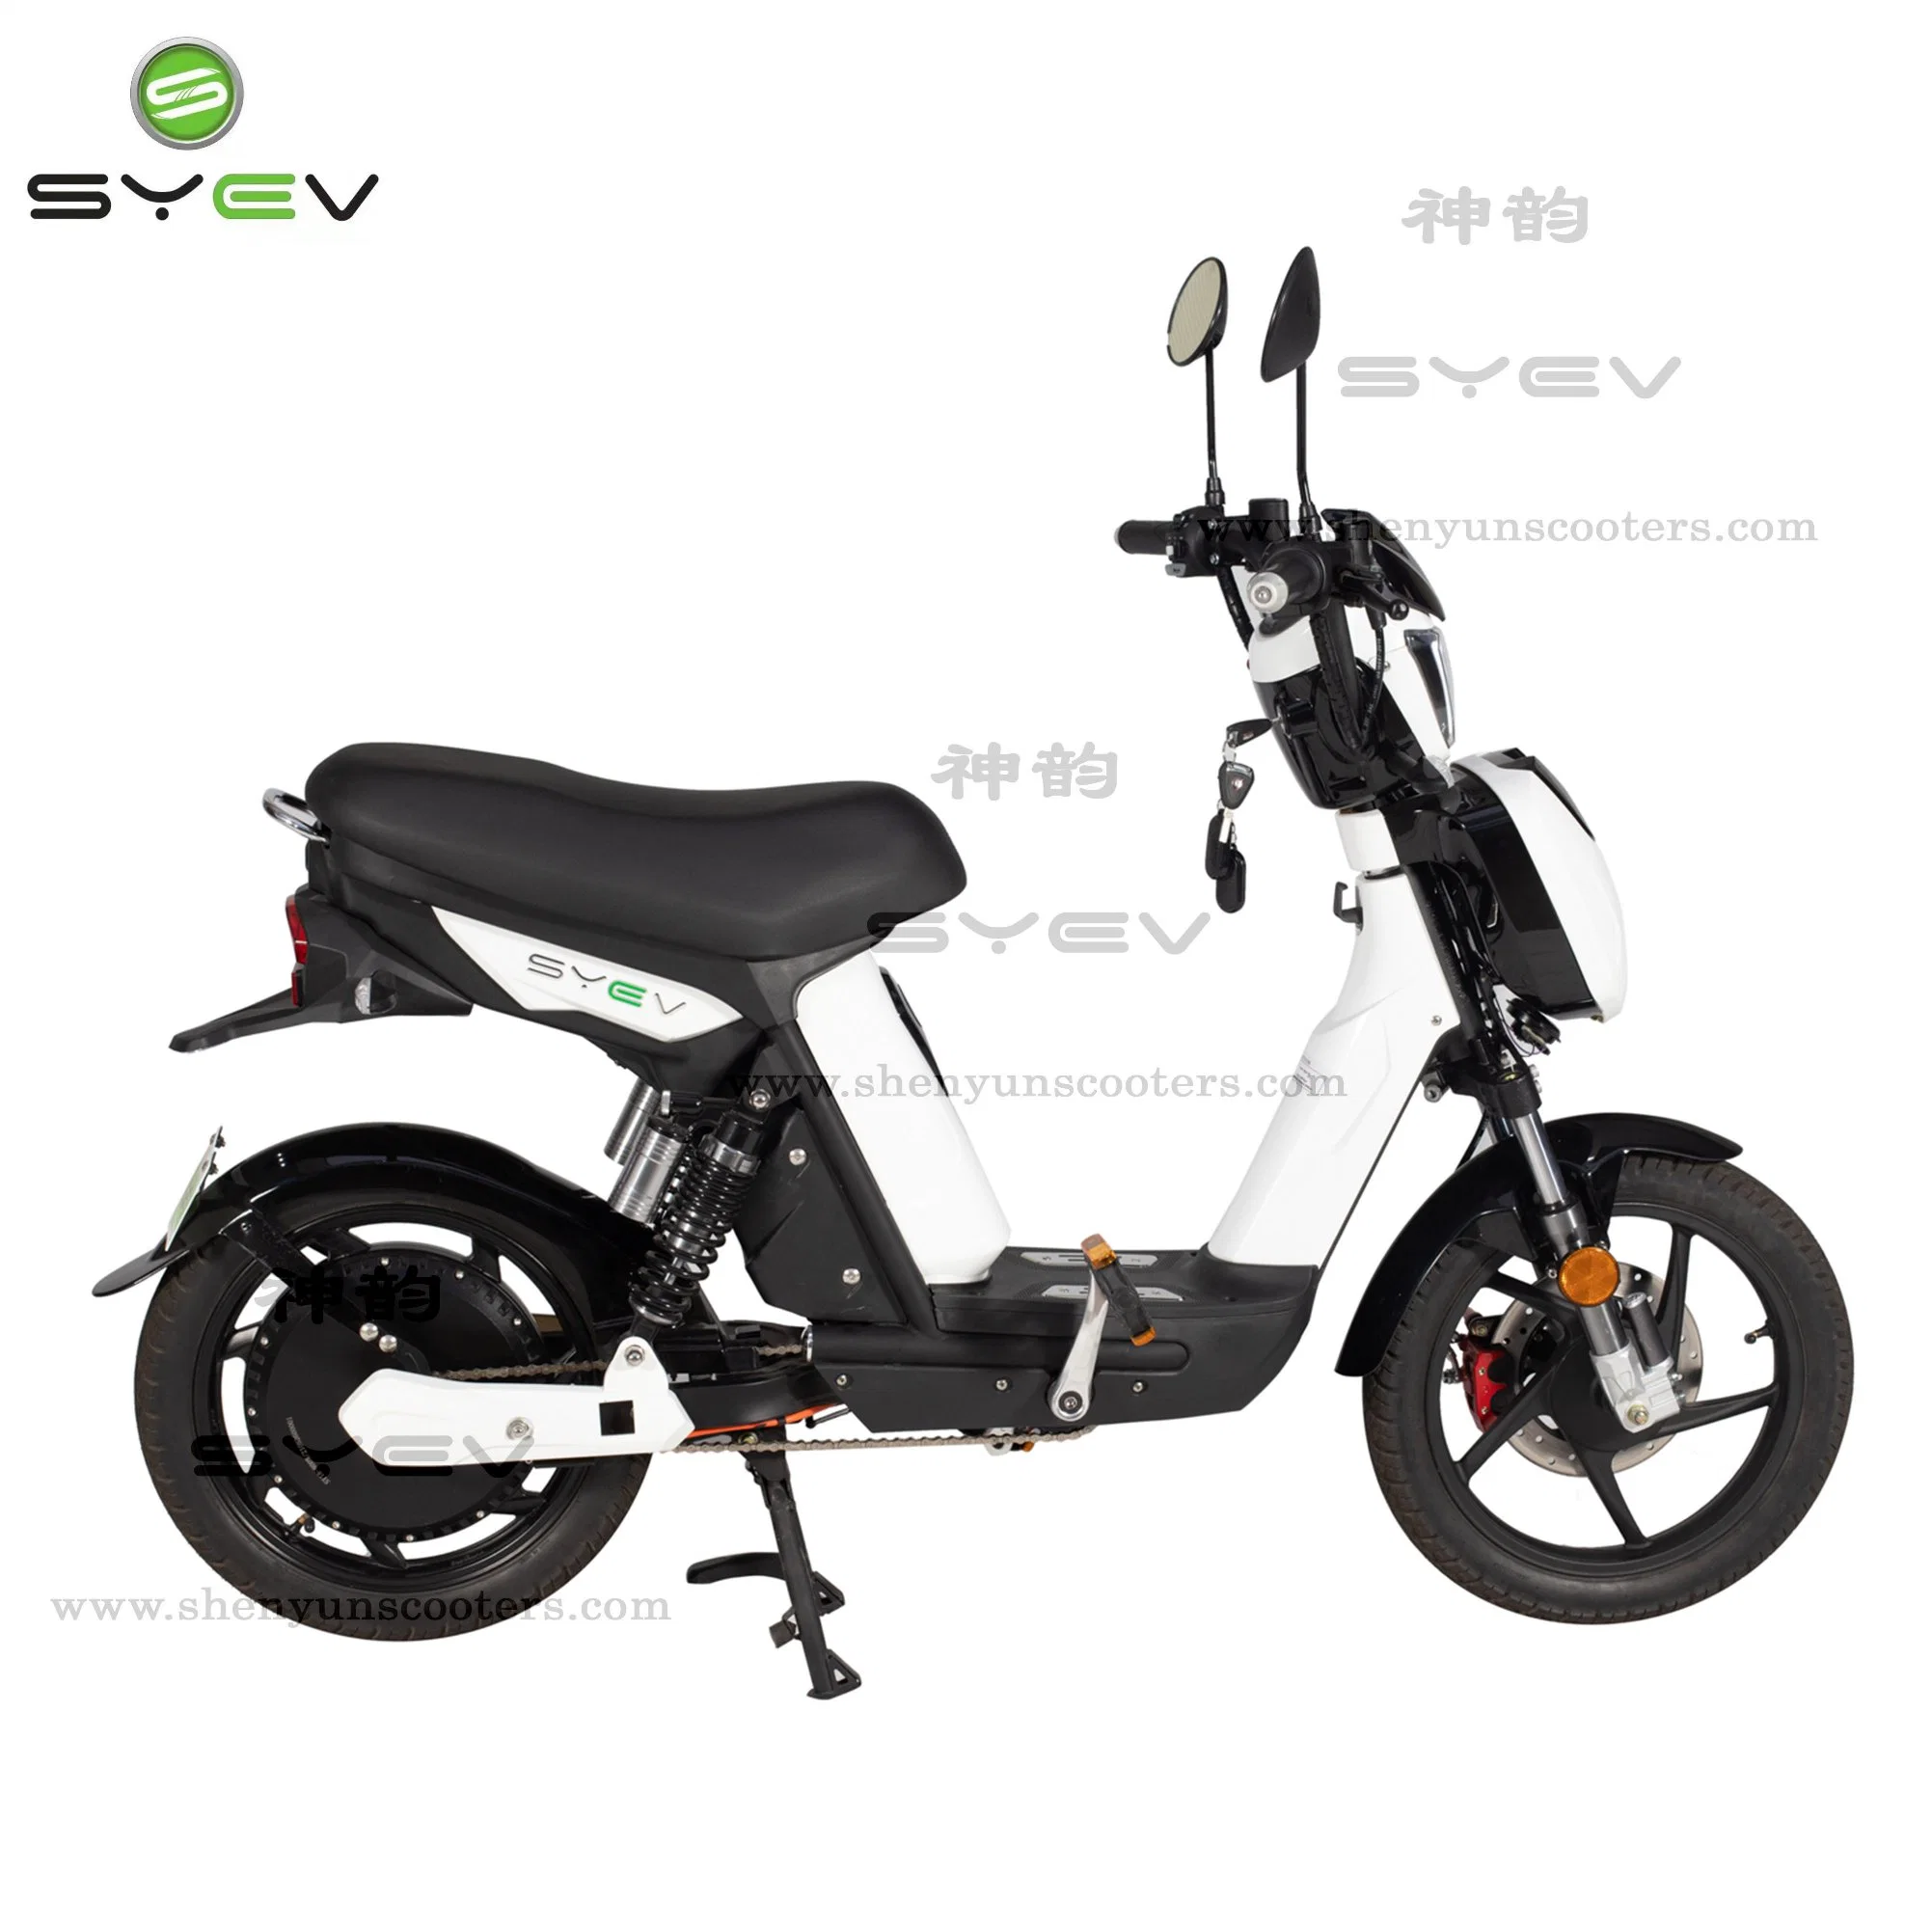 الصين أفضل أوكازيون 2 عجلة CE 500 واط دراجة كهربائية قوية للبالغين مع مساعد دواسة المقعد، سكوتر كهربائي